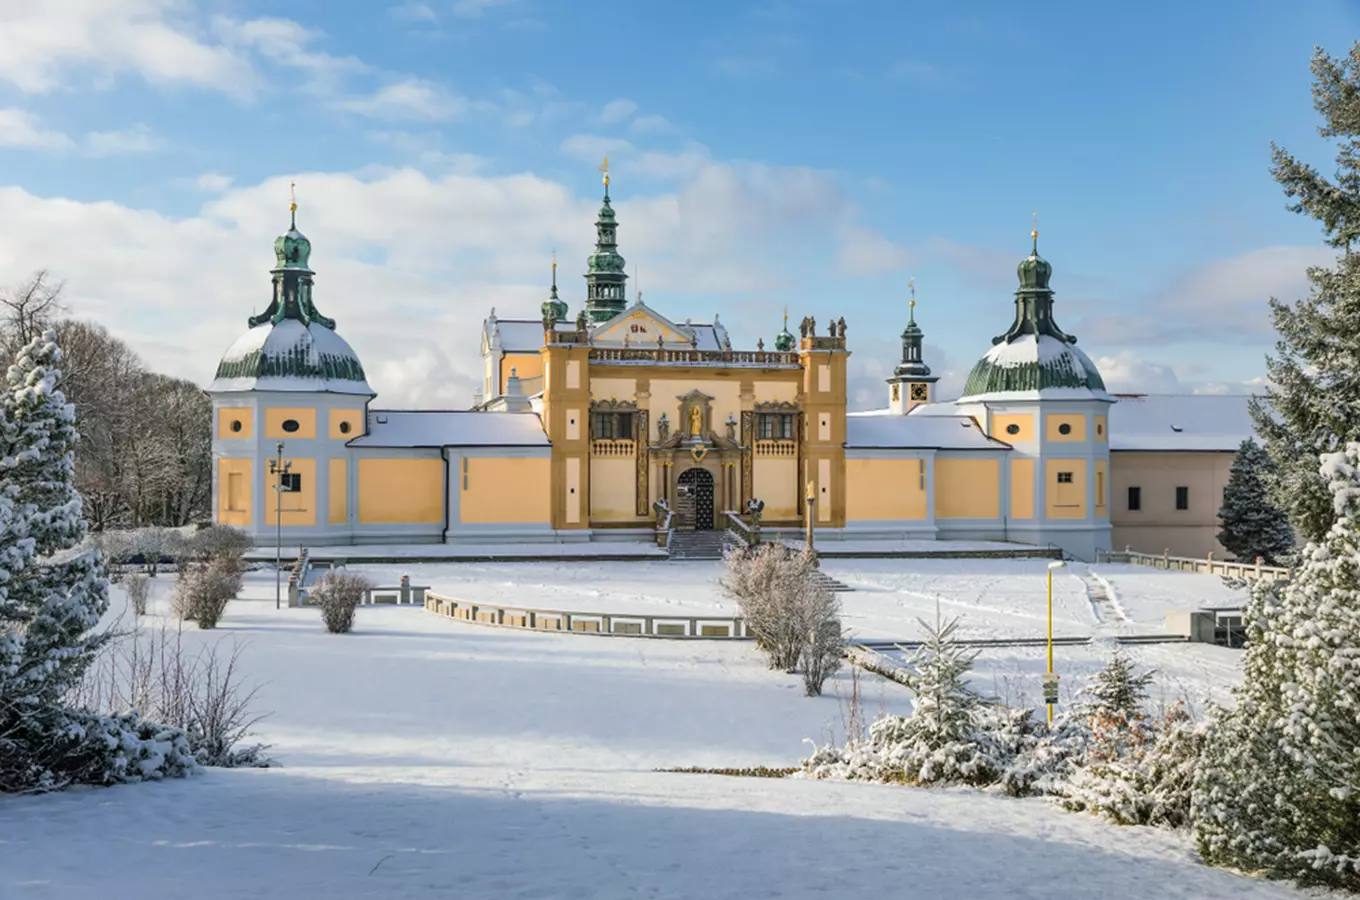 Užijte si prohlídky klášterů i v zimním období